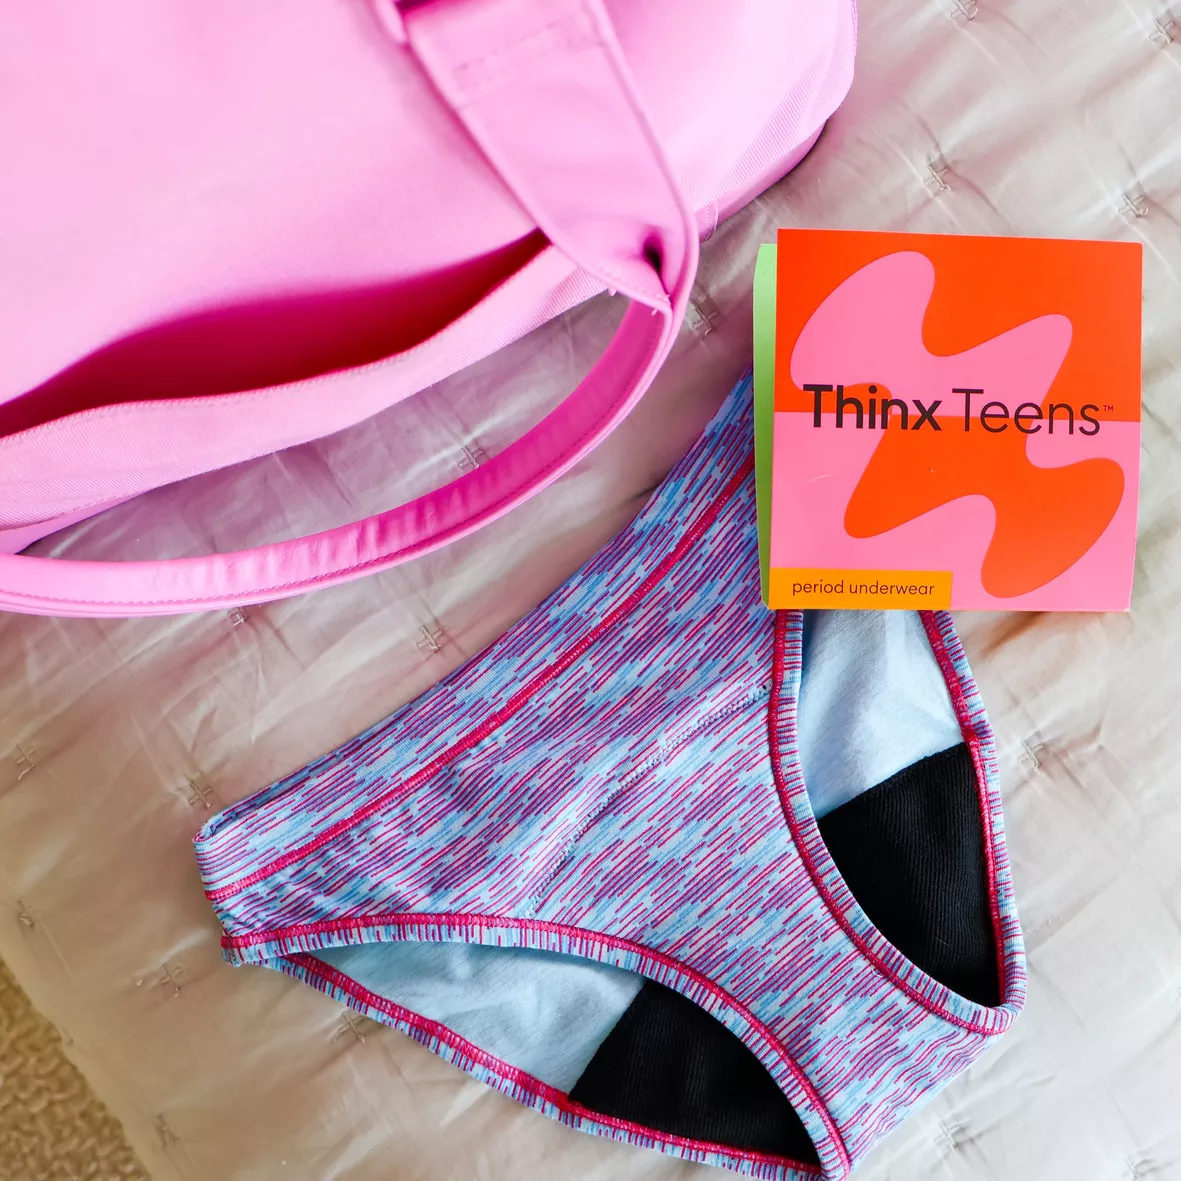 Thinx (BTWN) Brief Period Underwear for Teens, Cotton Underwear